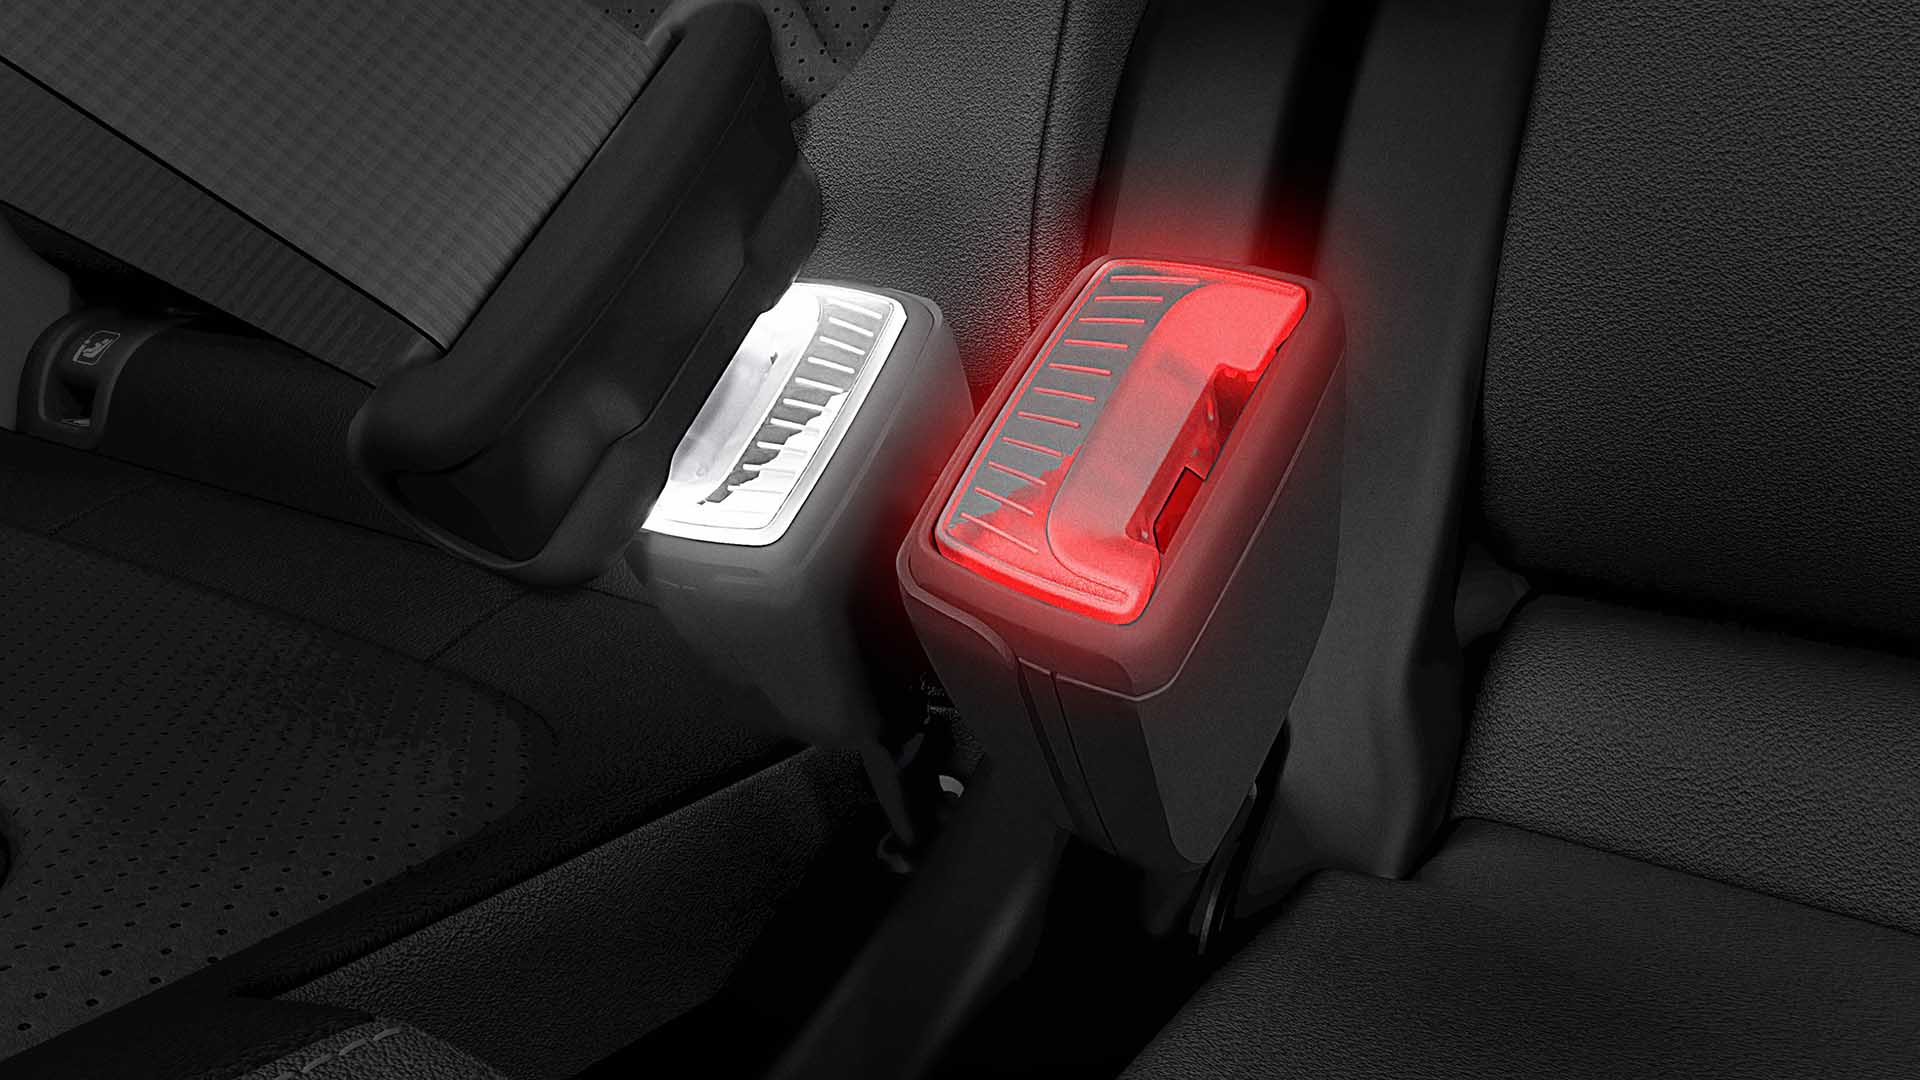 Illuminated smart seat belt buckles